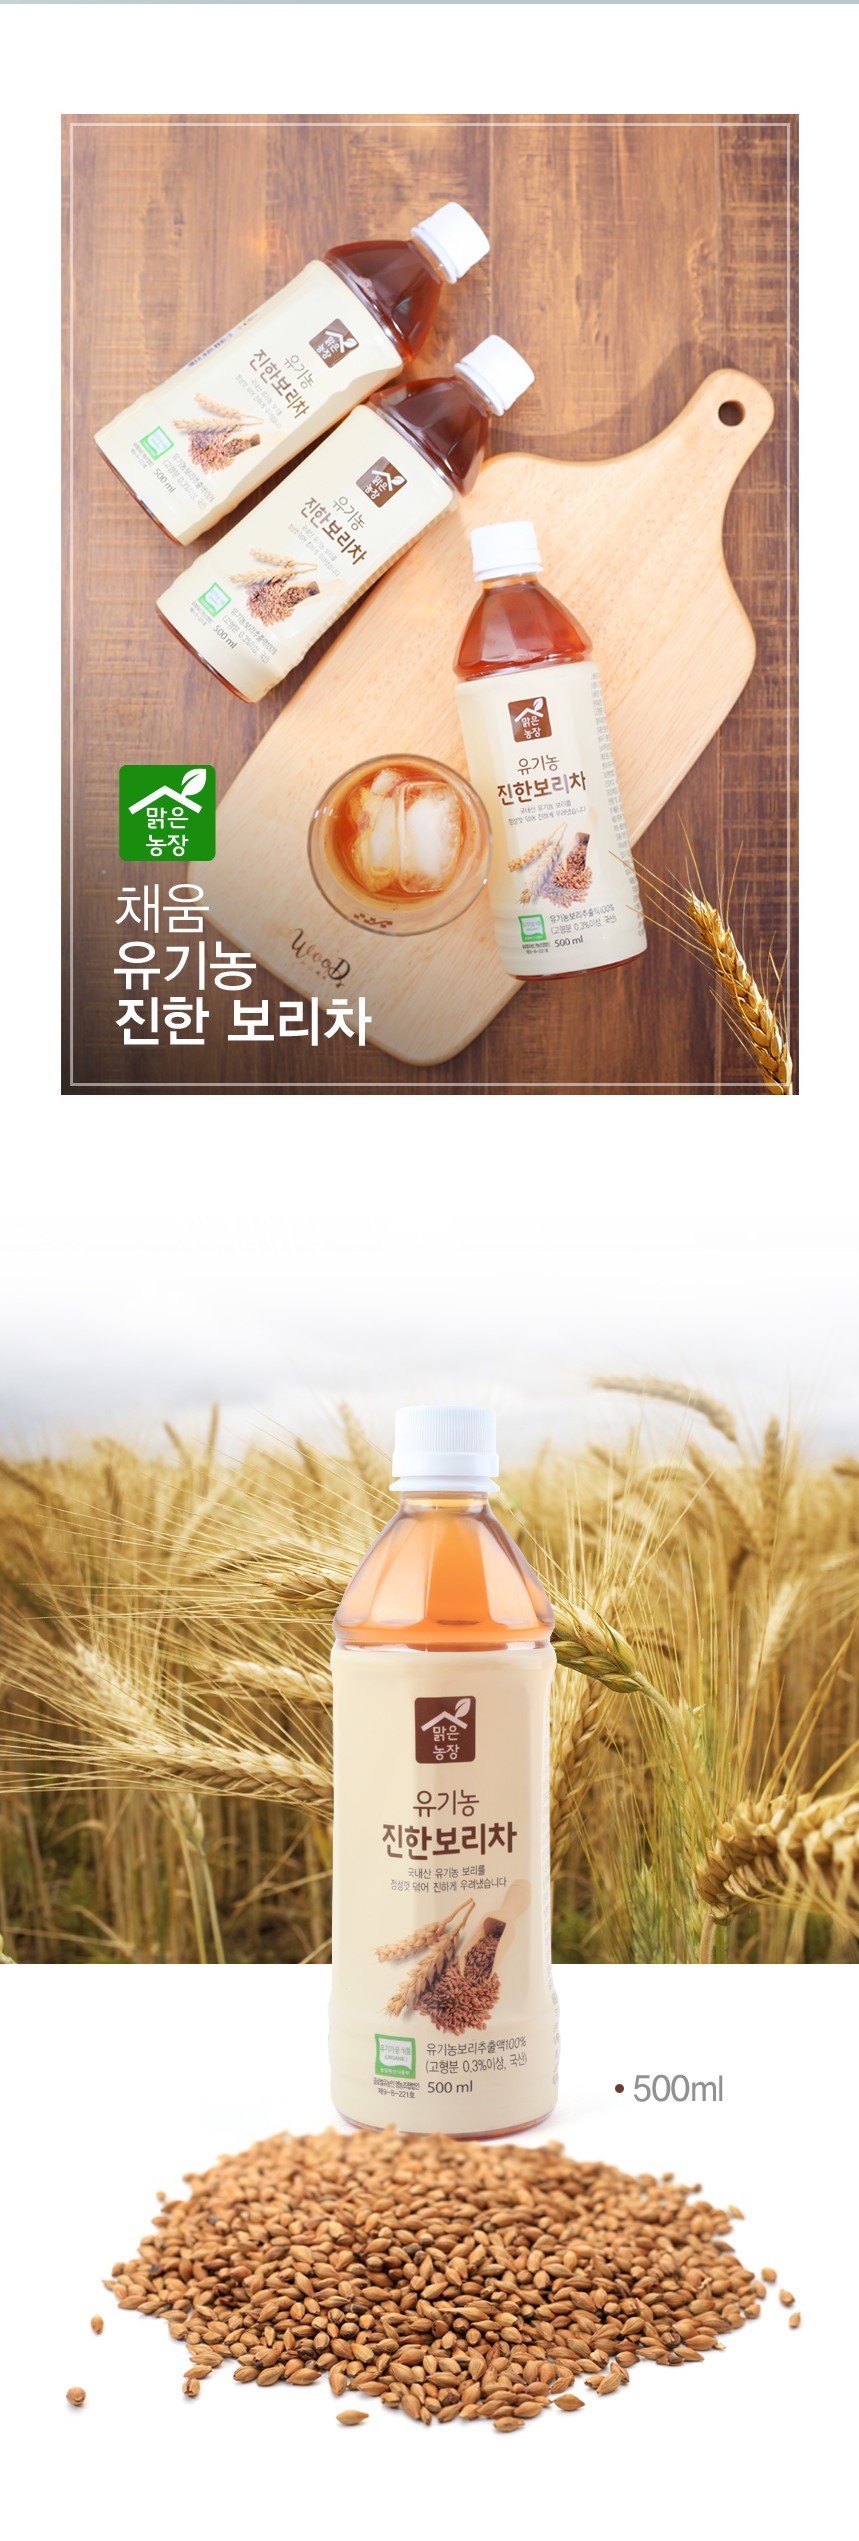 韓國食品-[채움] 맑은농장 유기농진한보리차 500ml